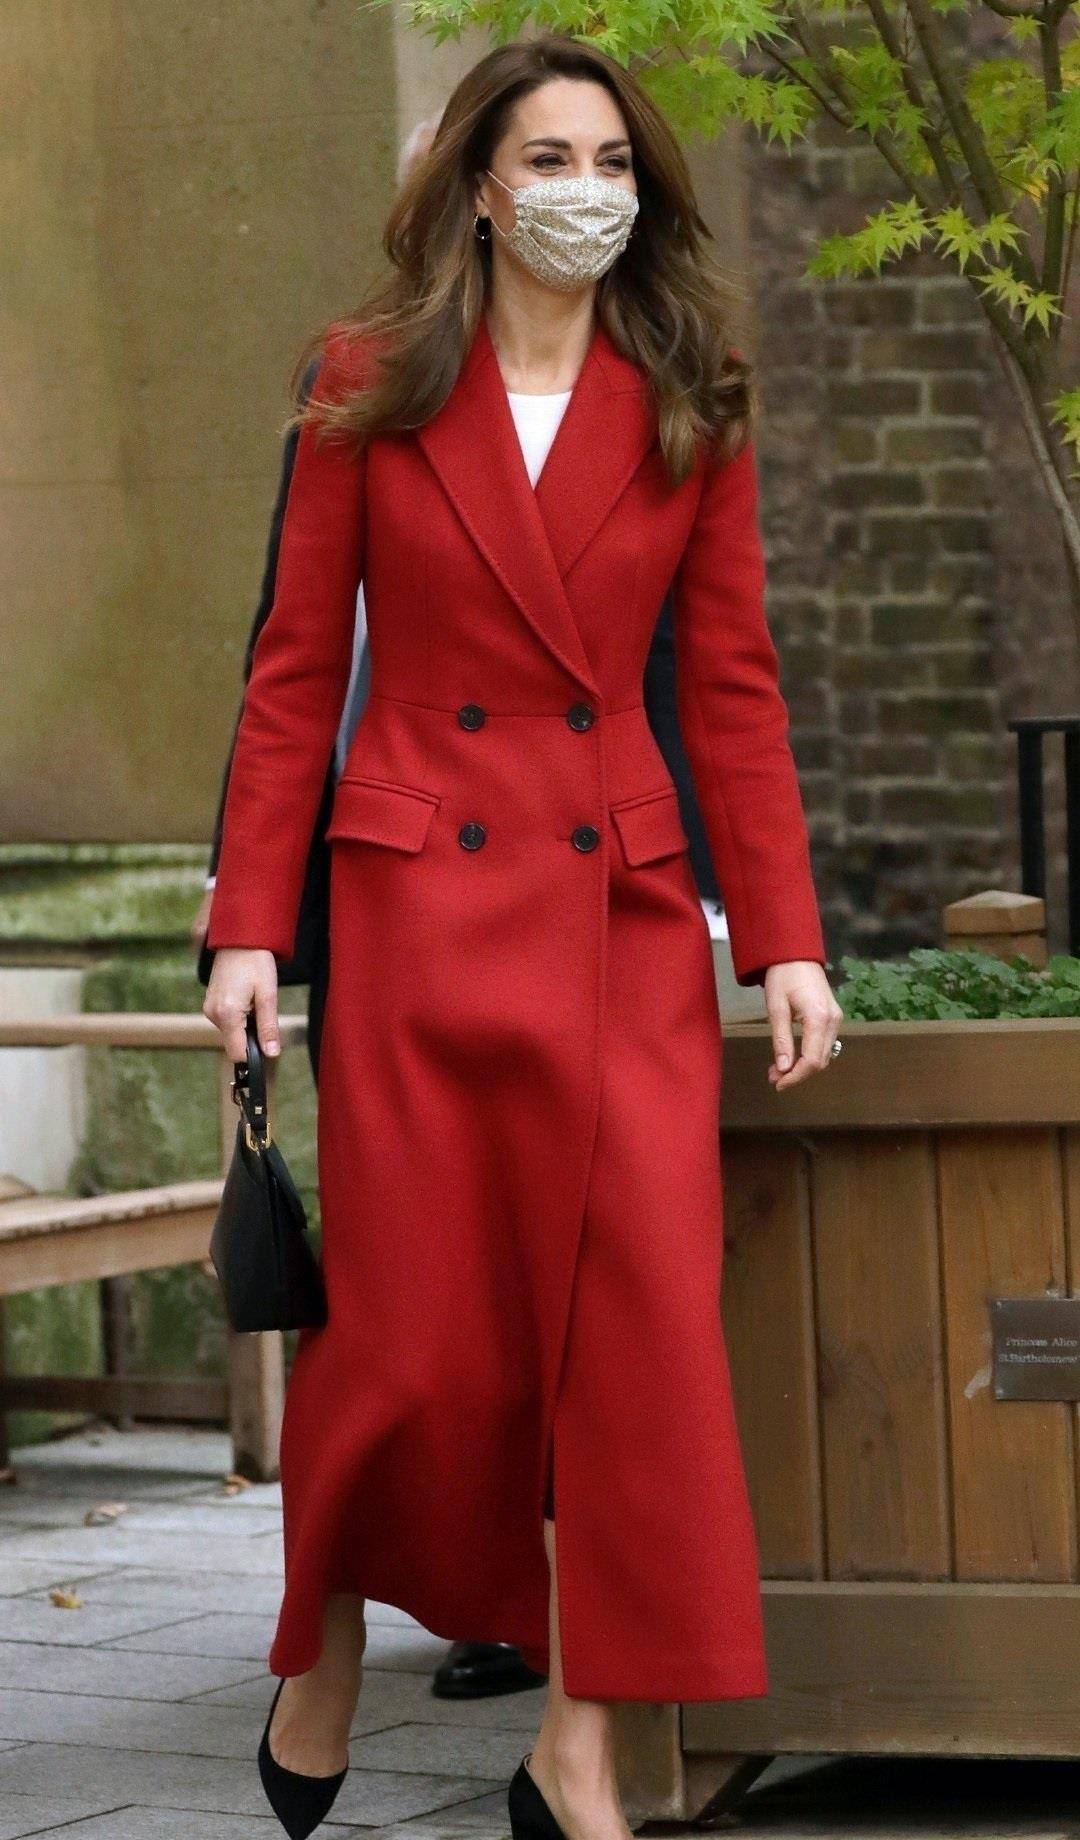 凯特王妃穿红色大衣太显高,长发飘飘真迷人,越看越年轻